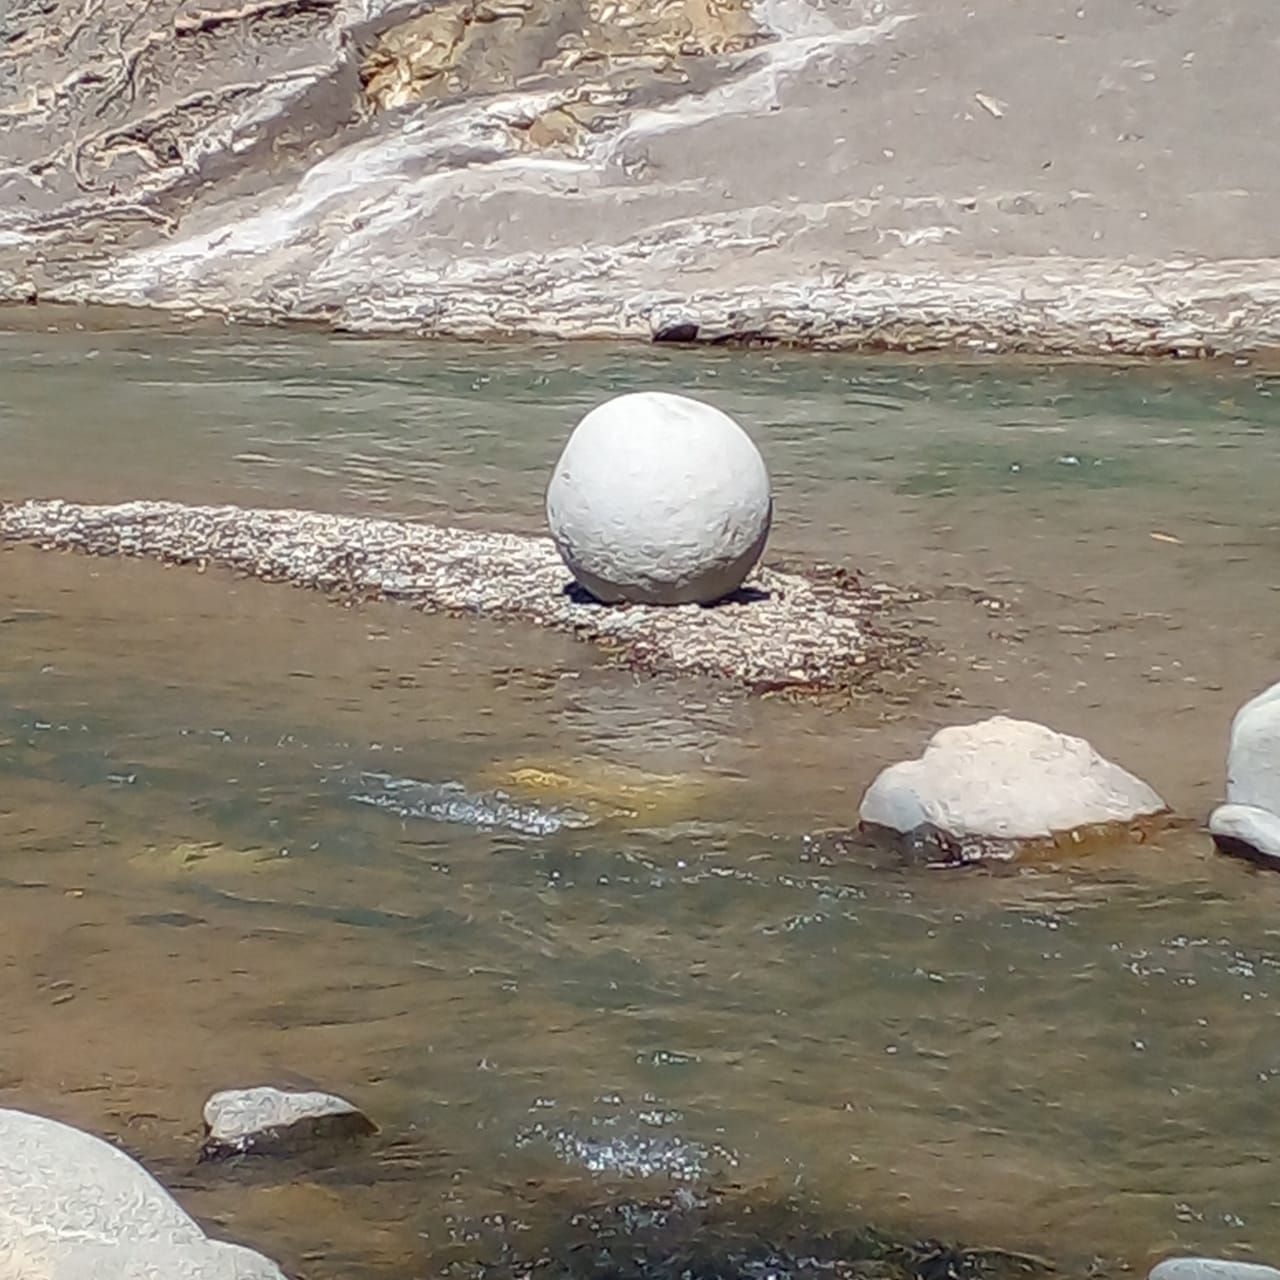 Quienes descubrieron la esfera la llevaron rodada a una parte seca del cauce del río para que la corriente no se la llevara.

Fotografía: Cortesía